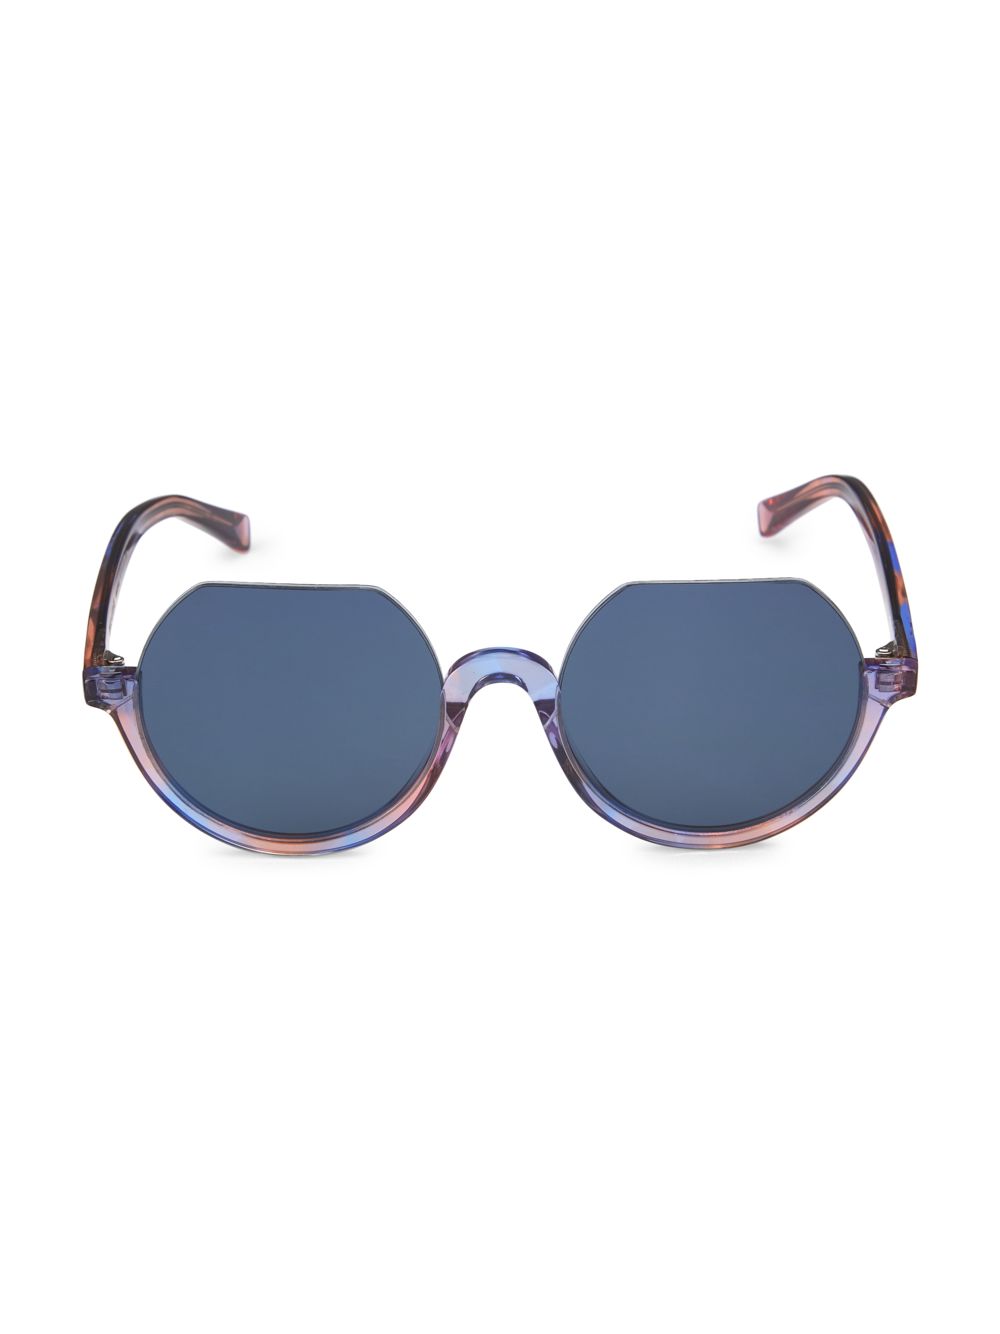 Круглые солнцезащитные очки Hebe III 52 мм Zeus + Dione, фиолетовый